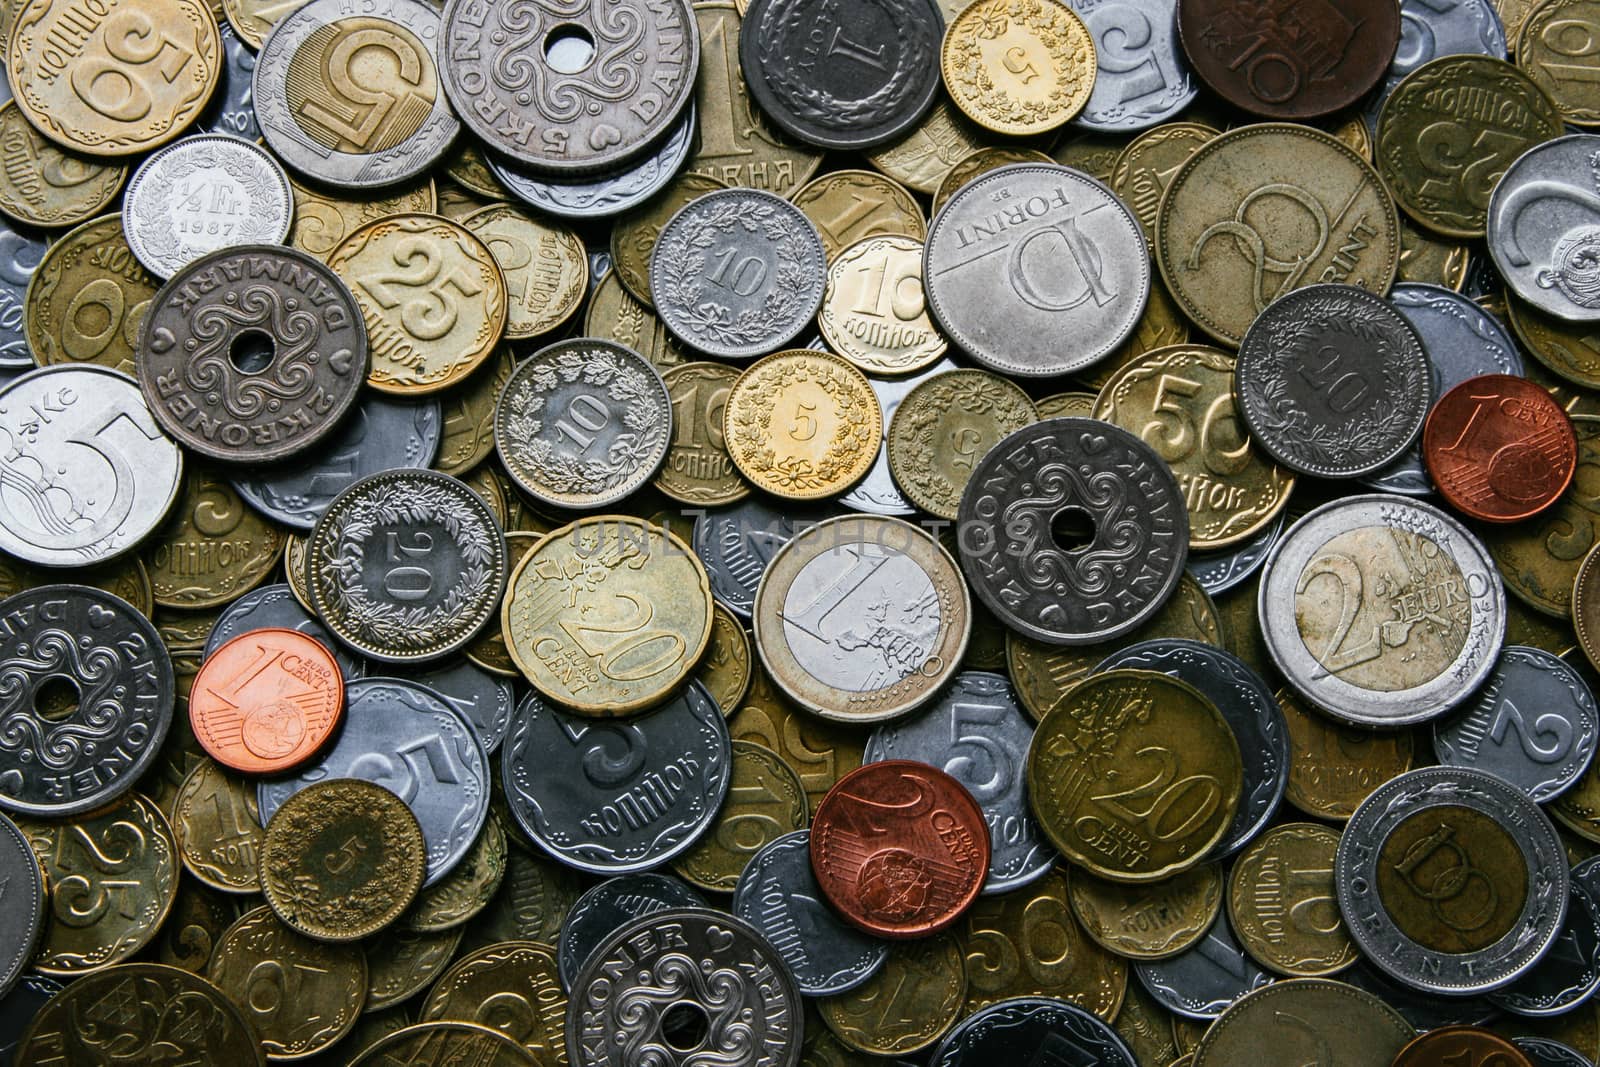 European coins by a_mikos